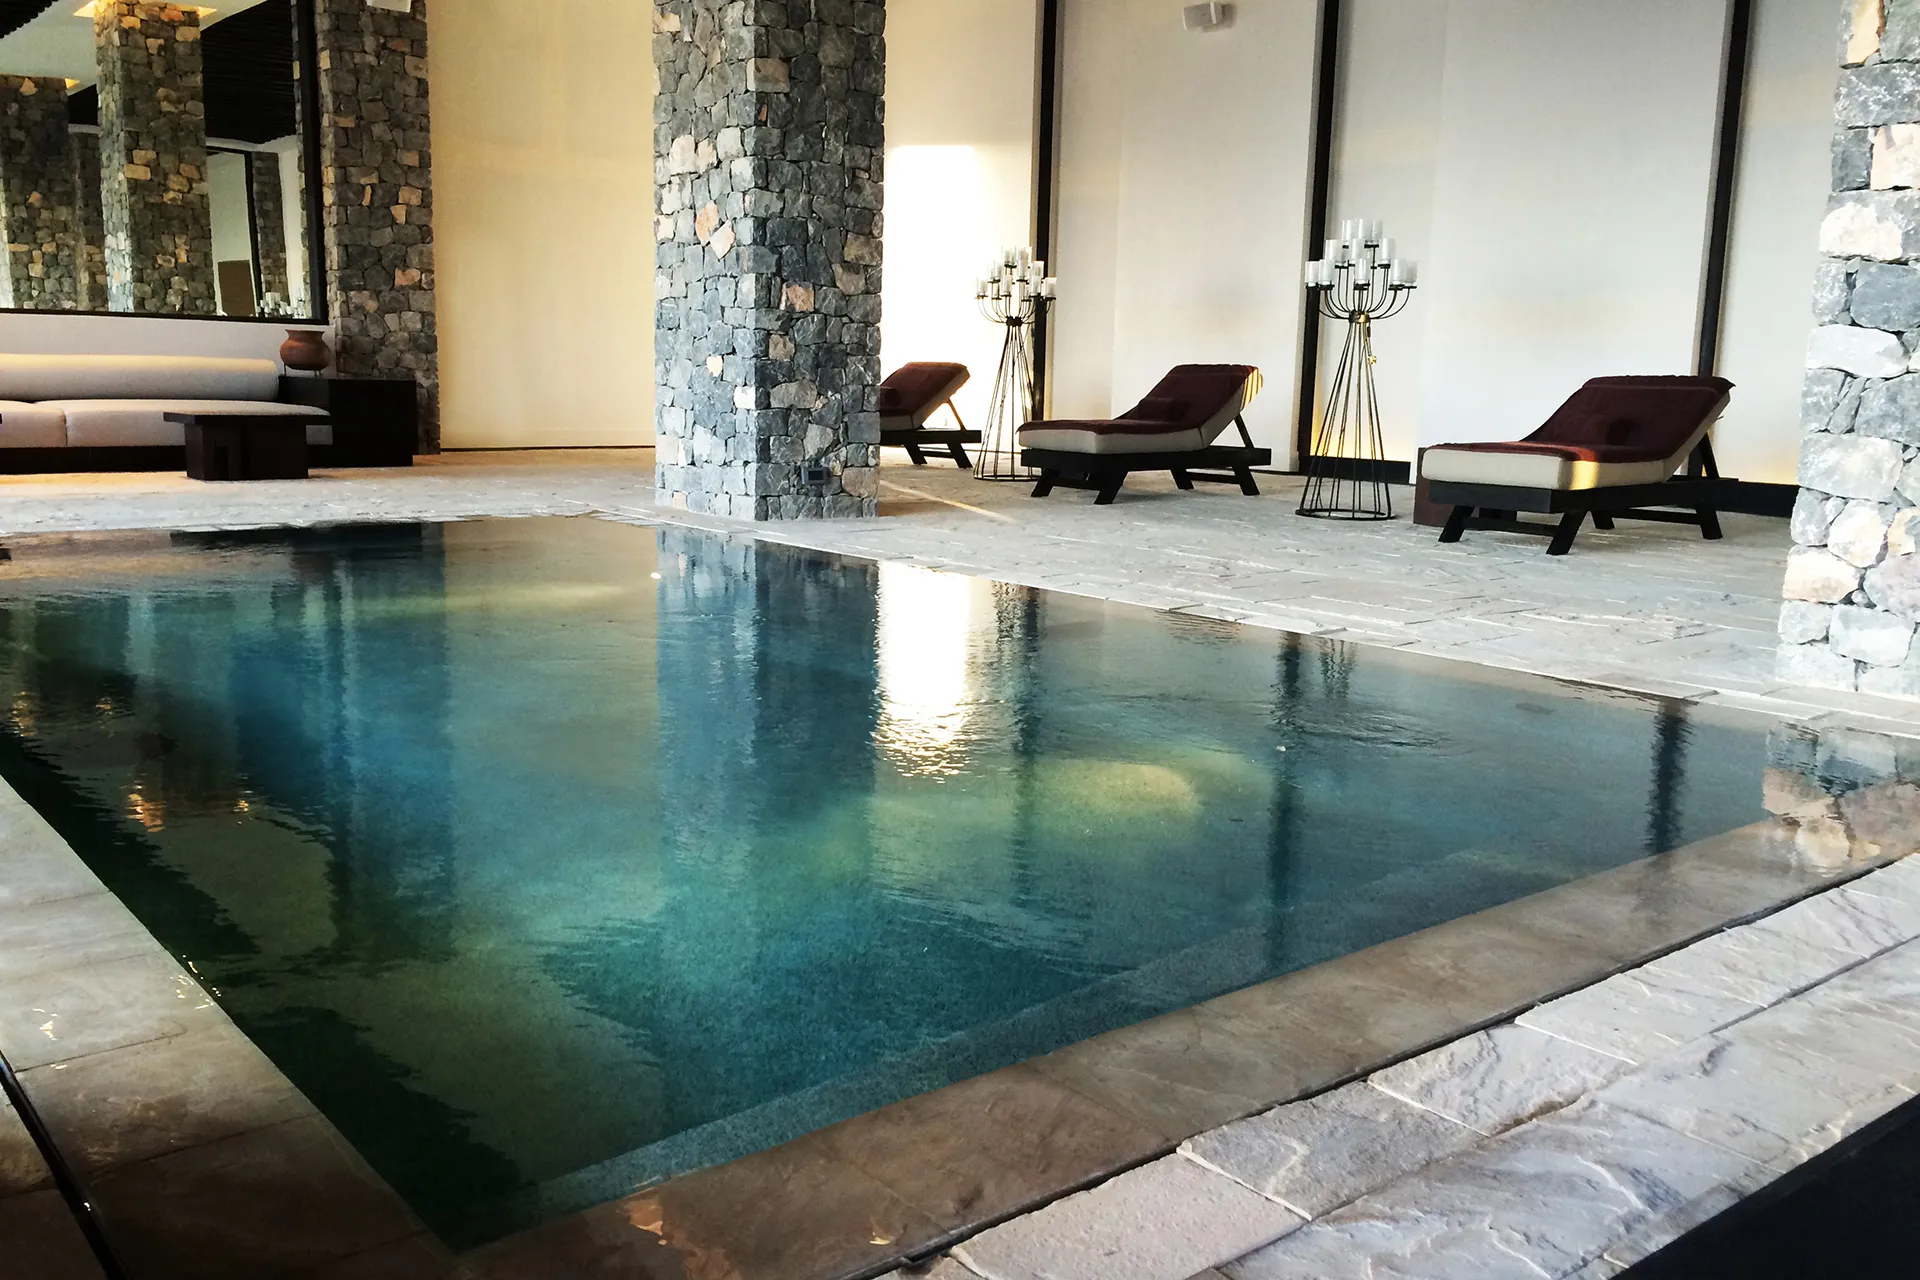 Pool im Innenbereich eines Hotels